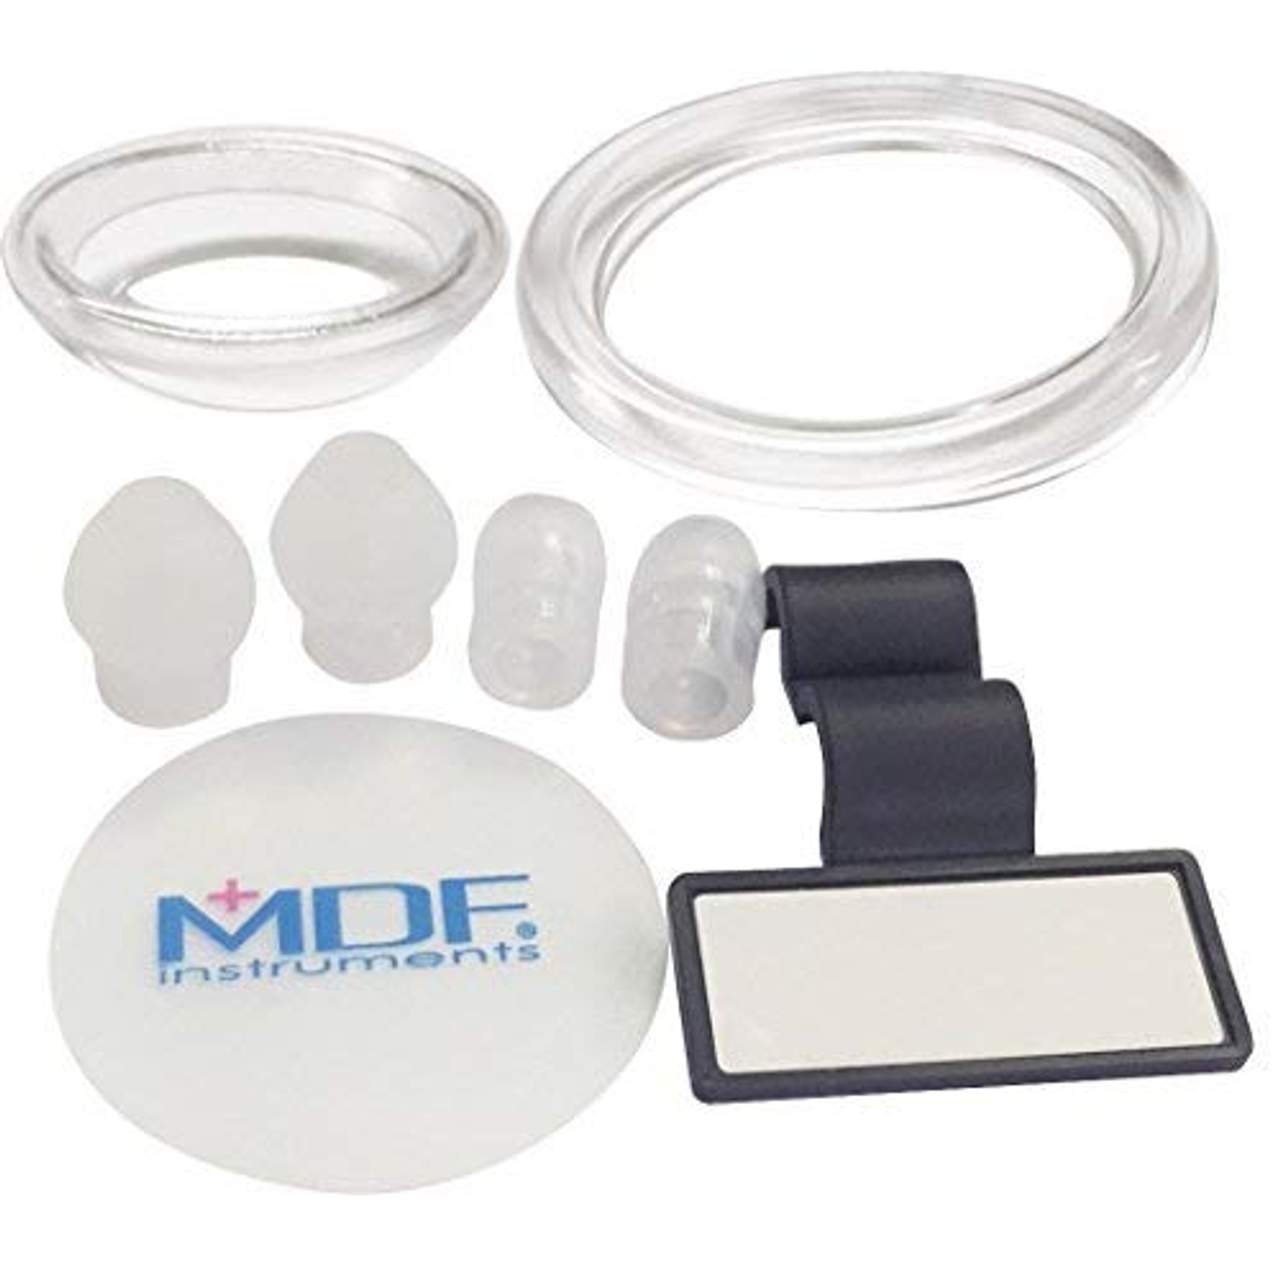 MDF MD One- Premium Zweikopf-Stethoskop aus rostfreiem Stahl